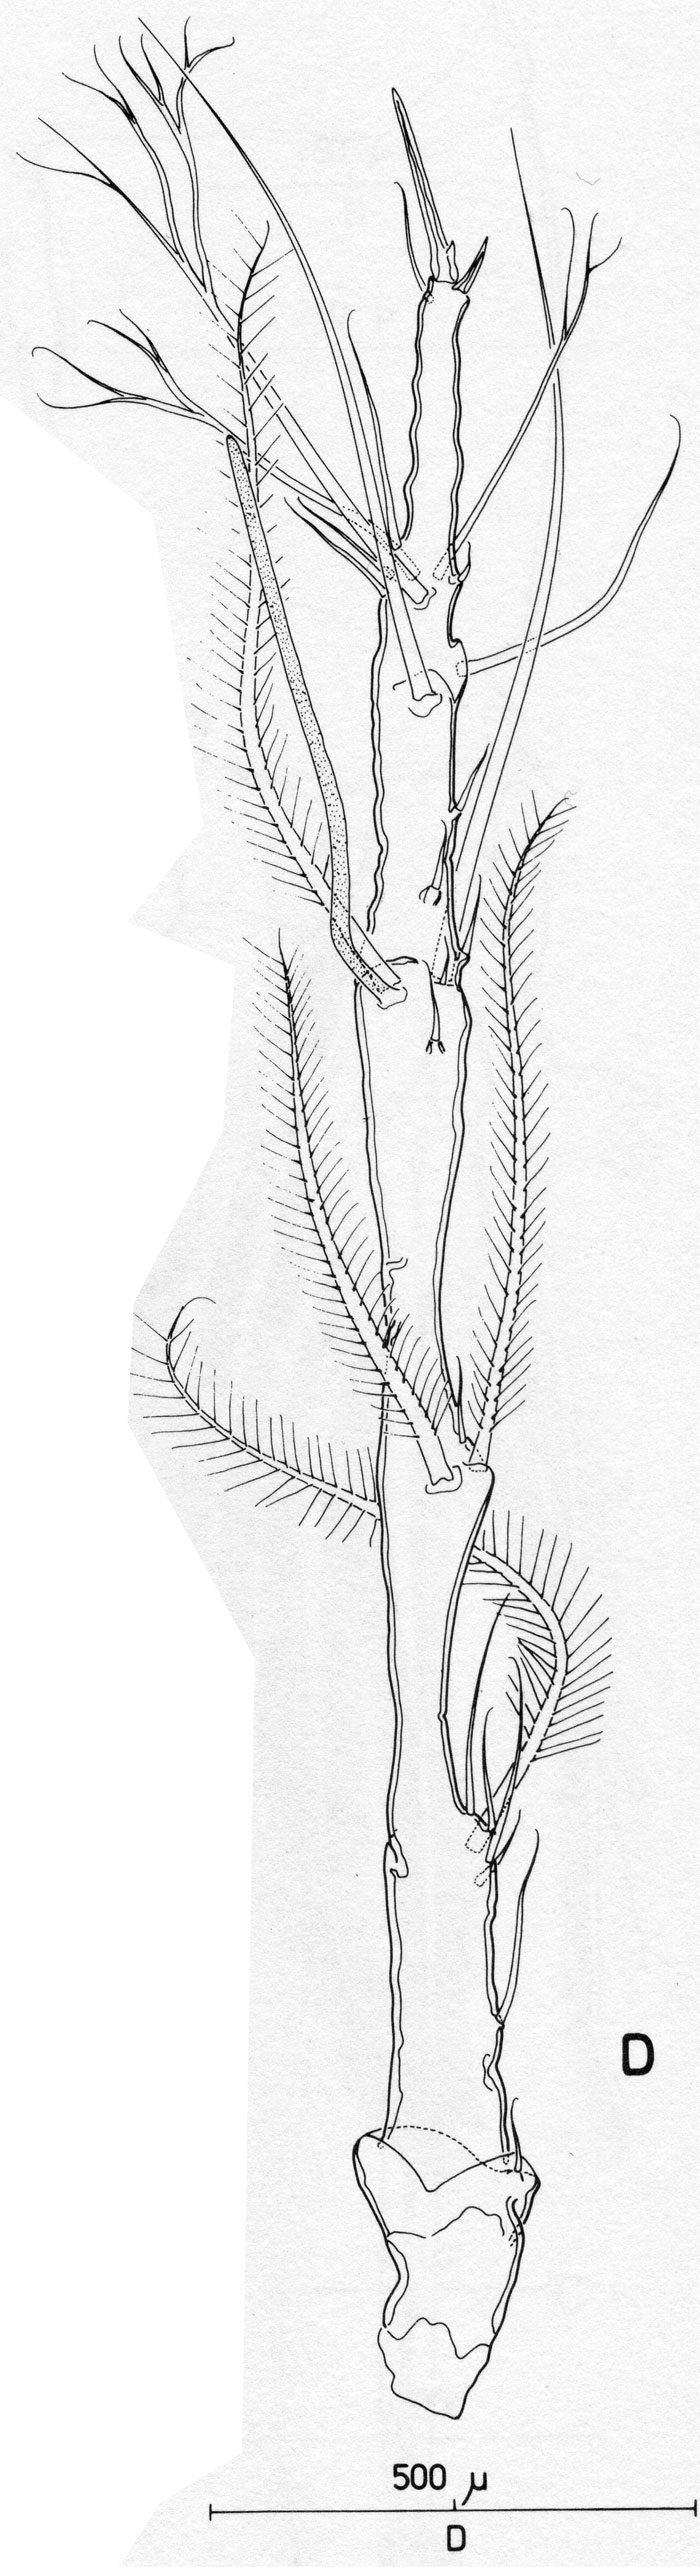 Espce Monstrilla longiremis - Planche 2 de figures morphologiques